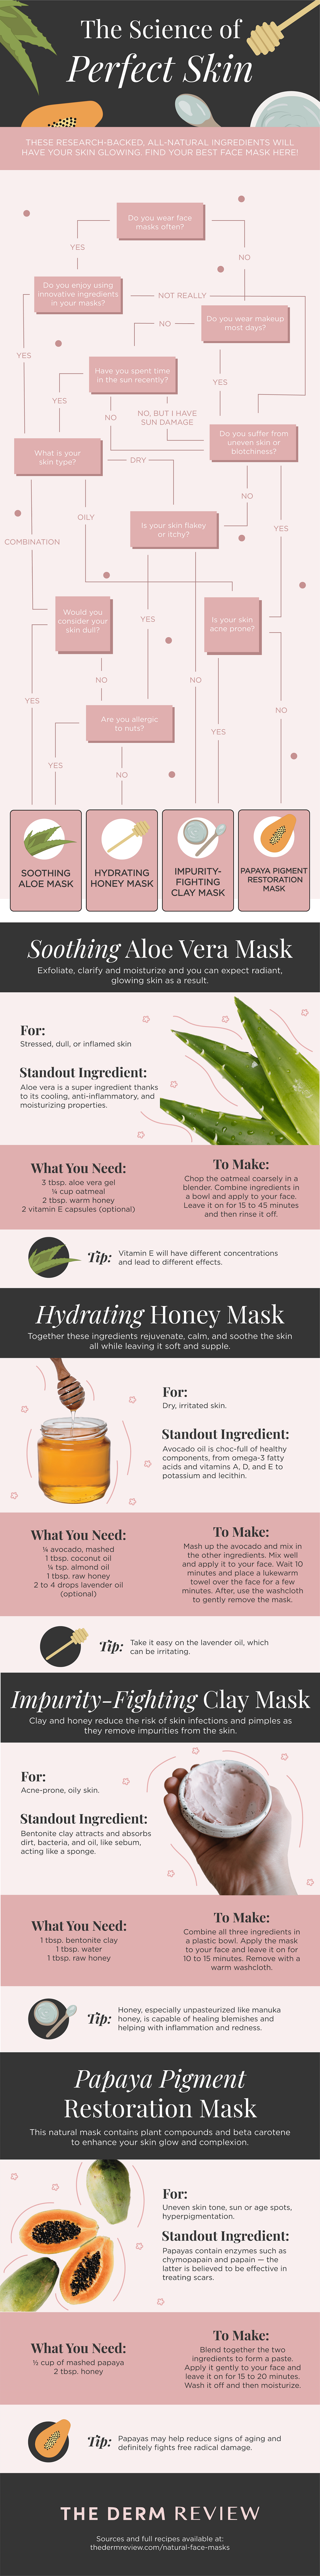 Infographie : la science de la peau parfaite, recettes de masques naturels pour le visage